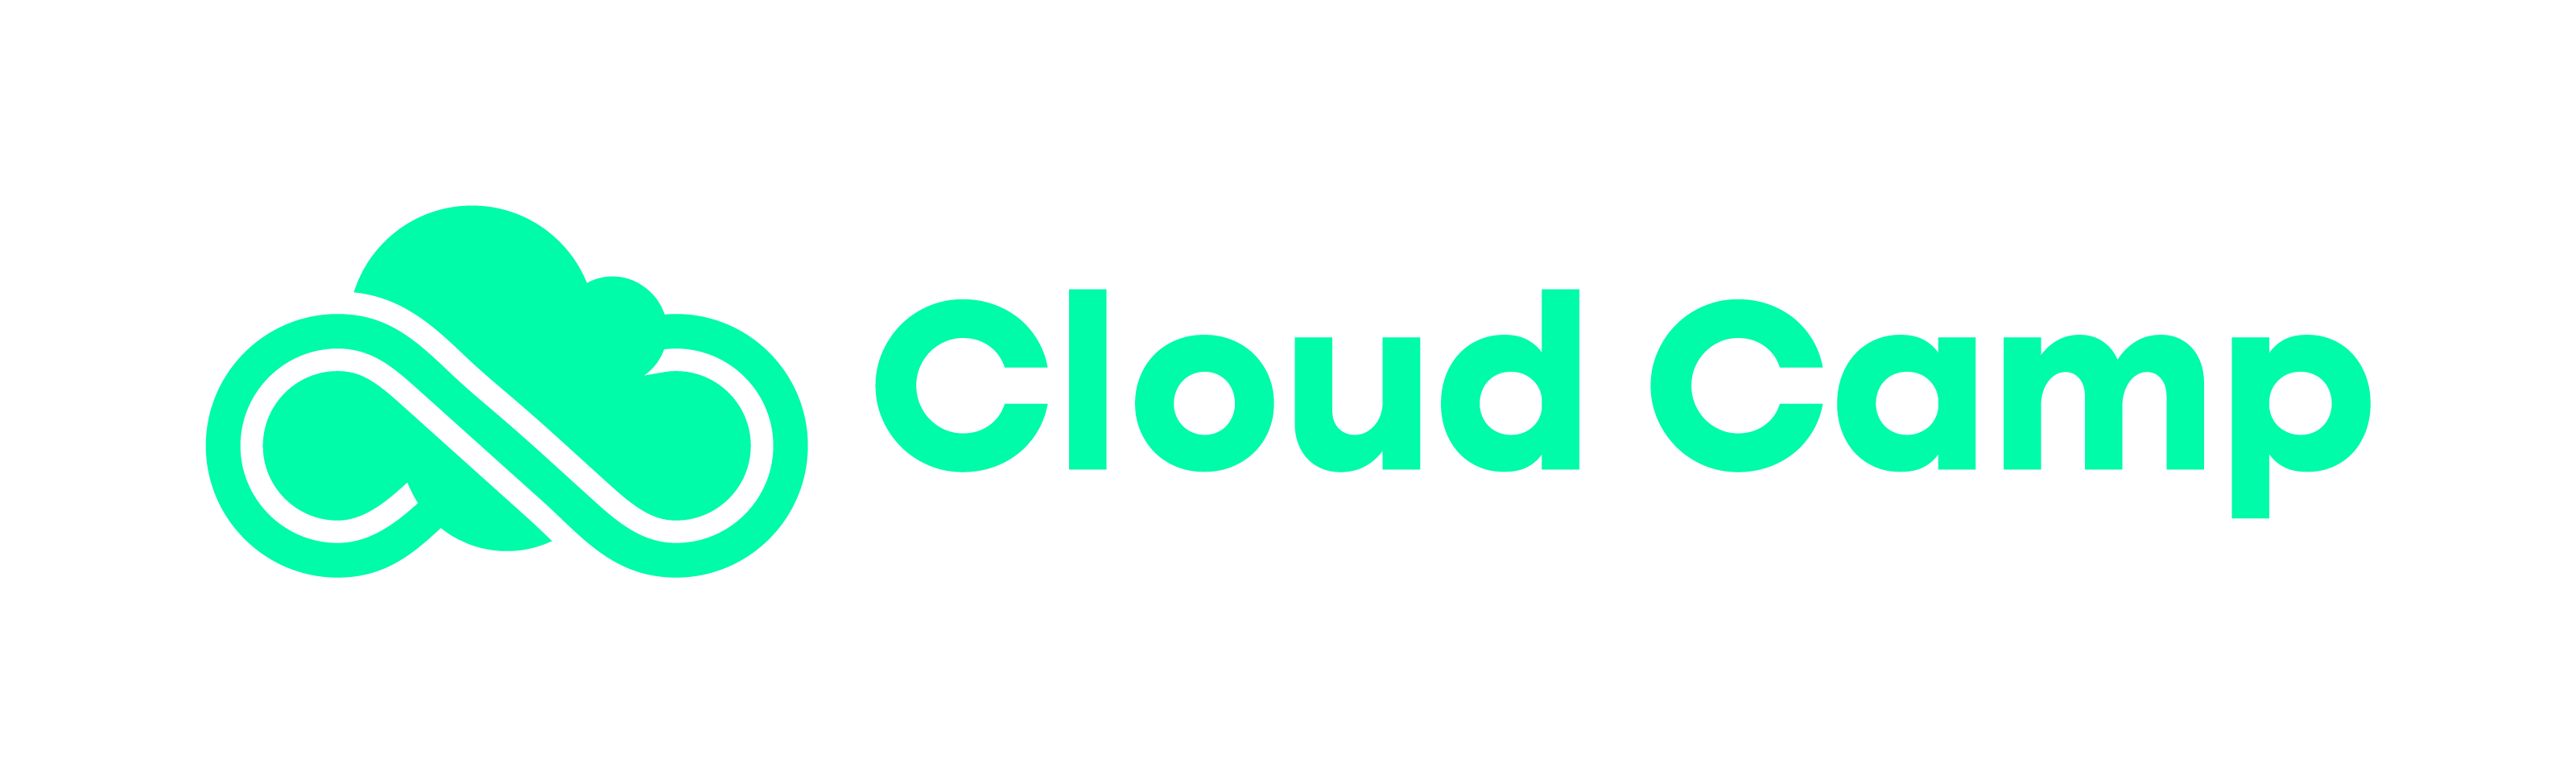 cloud-camp-logo